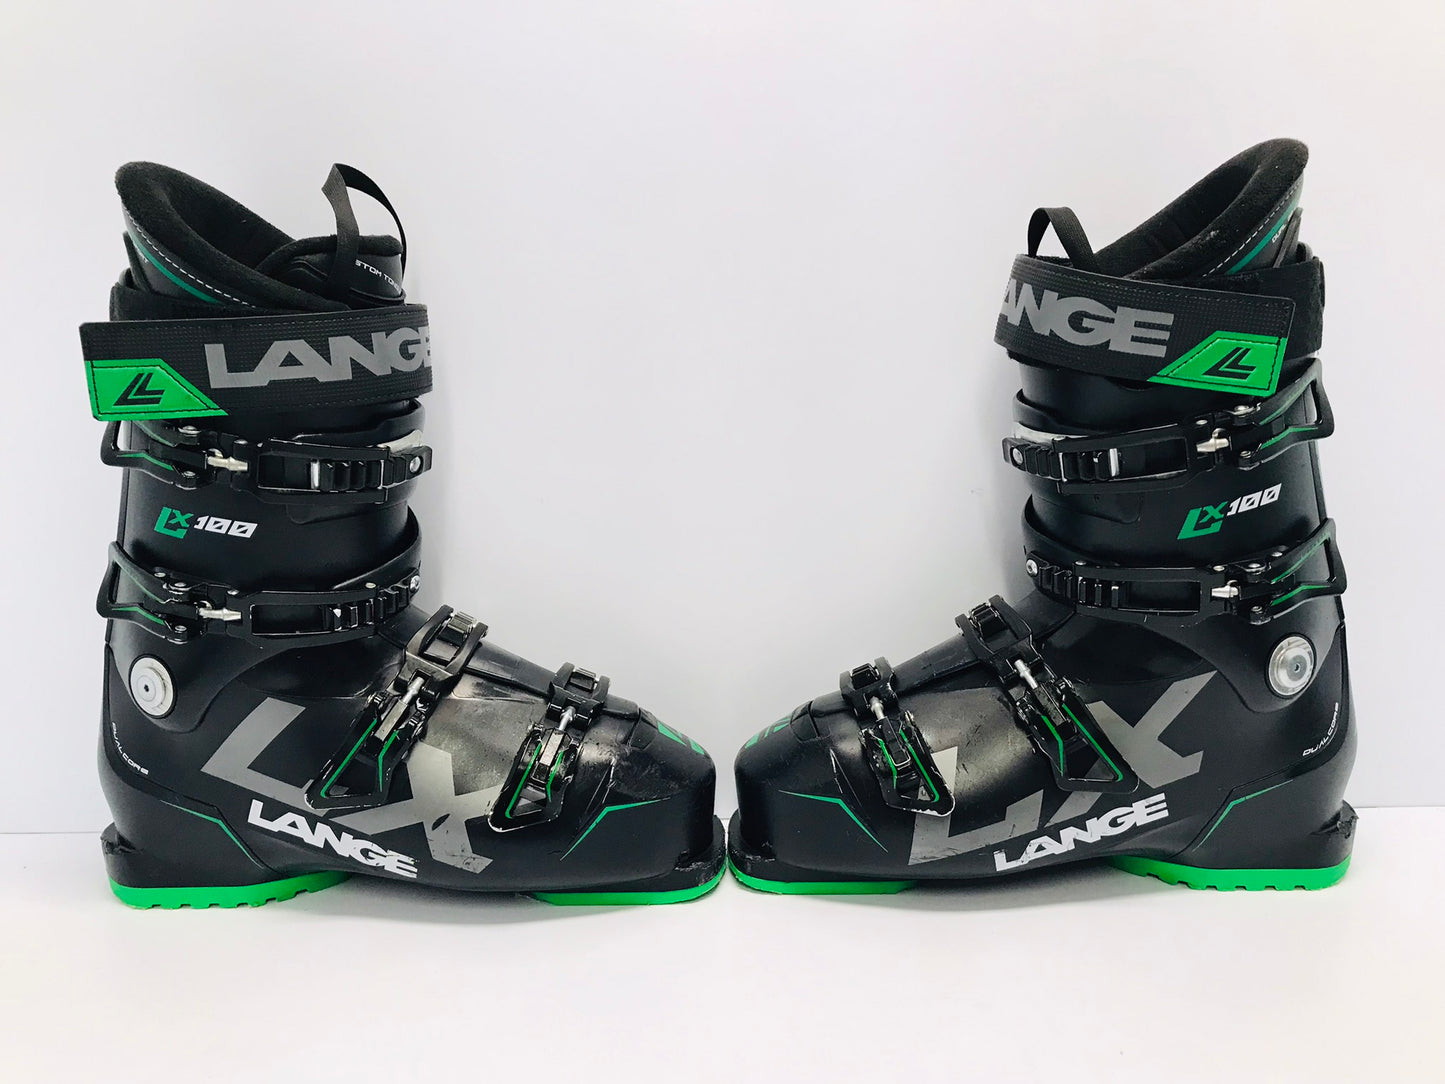 Ski Boots Mondo Size 27.5 Men's Size 9.5 Ladies Size 10.5 316 mm Lange Black Green Excellent